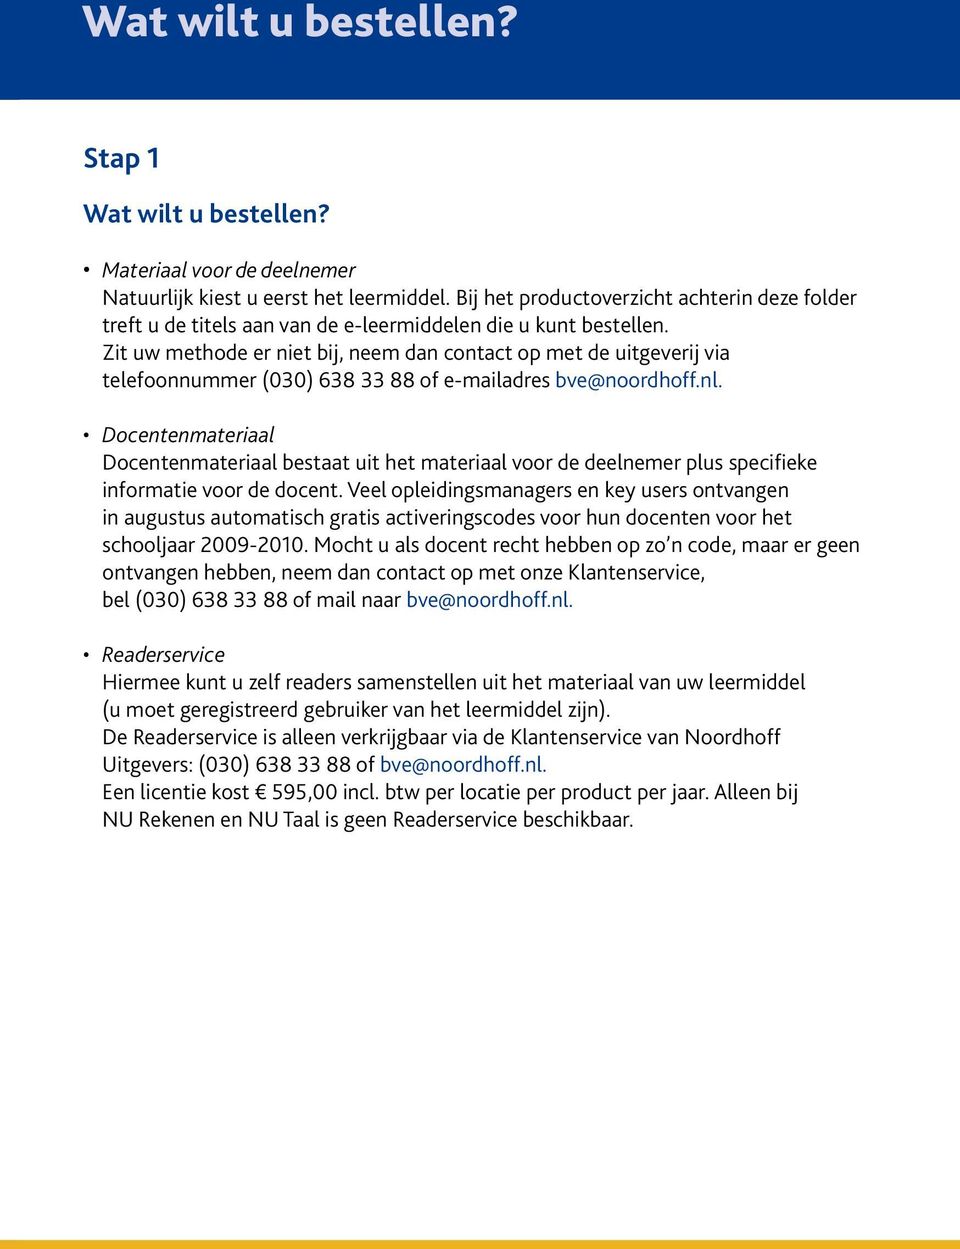 Zit uw methode er niet bij, neem dan contact op met de uitgeverij via telefoonnummer (030) 638 33 88 of e-mailadres bve@noordhoff.nl.